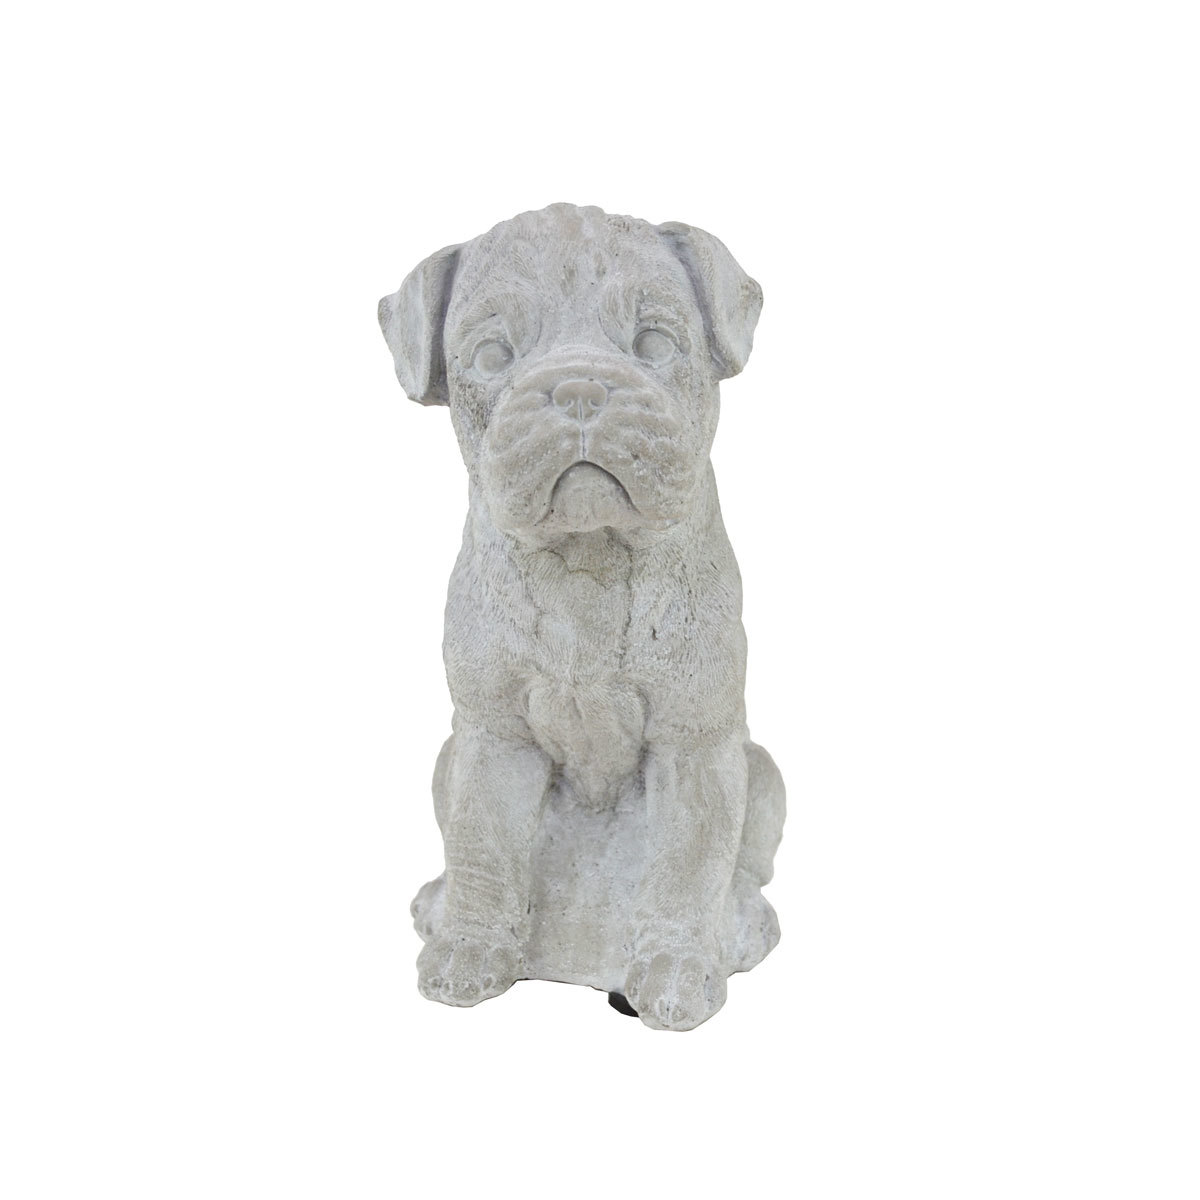 Objet de jardin en ciment Chien Carlin Figurine de chien Entrée, Articles faits à la main, intérieur, marchandises diverses, ornement, objet